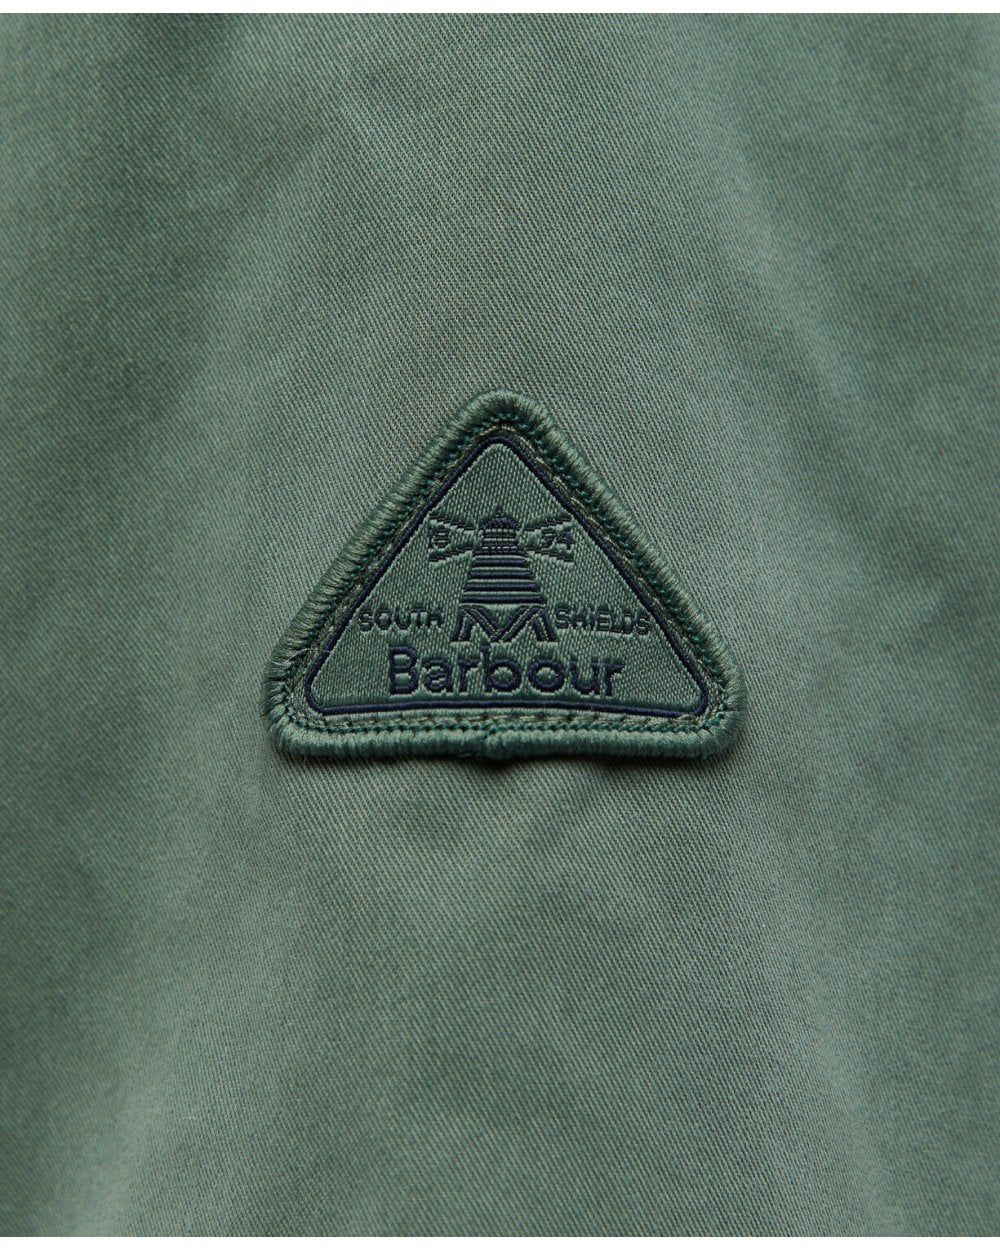 Belgrave Waterproof Jacket